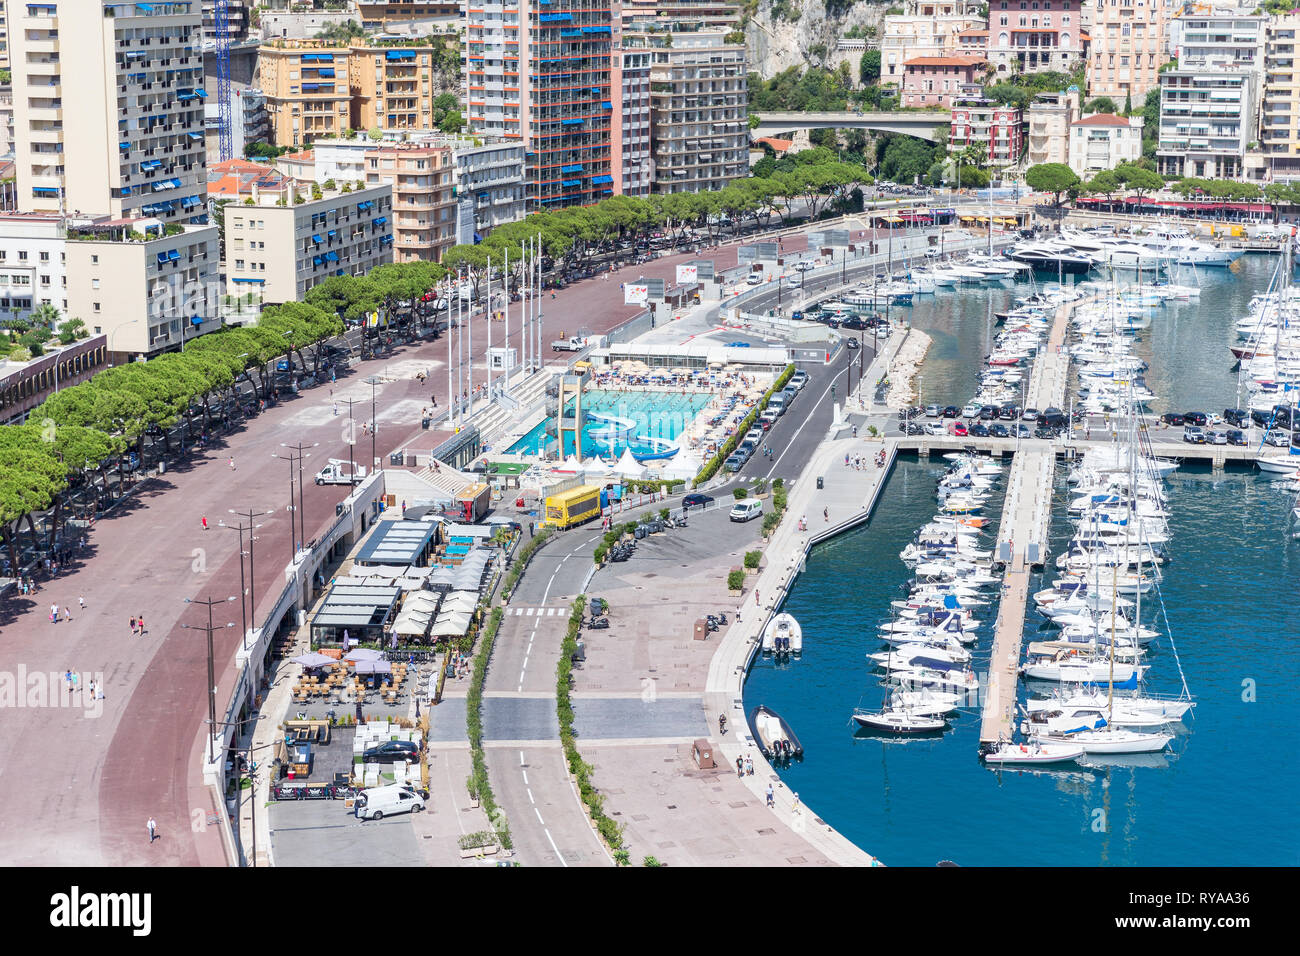 Blick von oben auf das Schwimmbad im Hafen von Monte Carlo in Monte Carlo, Monaco, 29.08.2018 Bildnachweis: Mario Hommes / HH-Photography Stock Photo